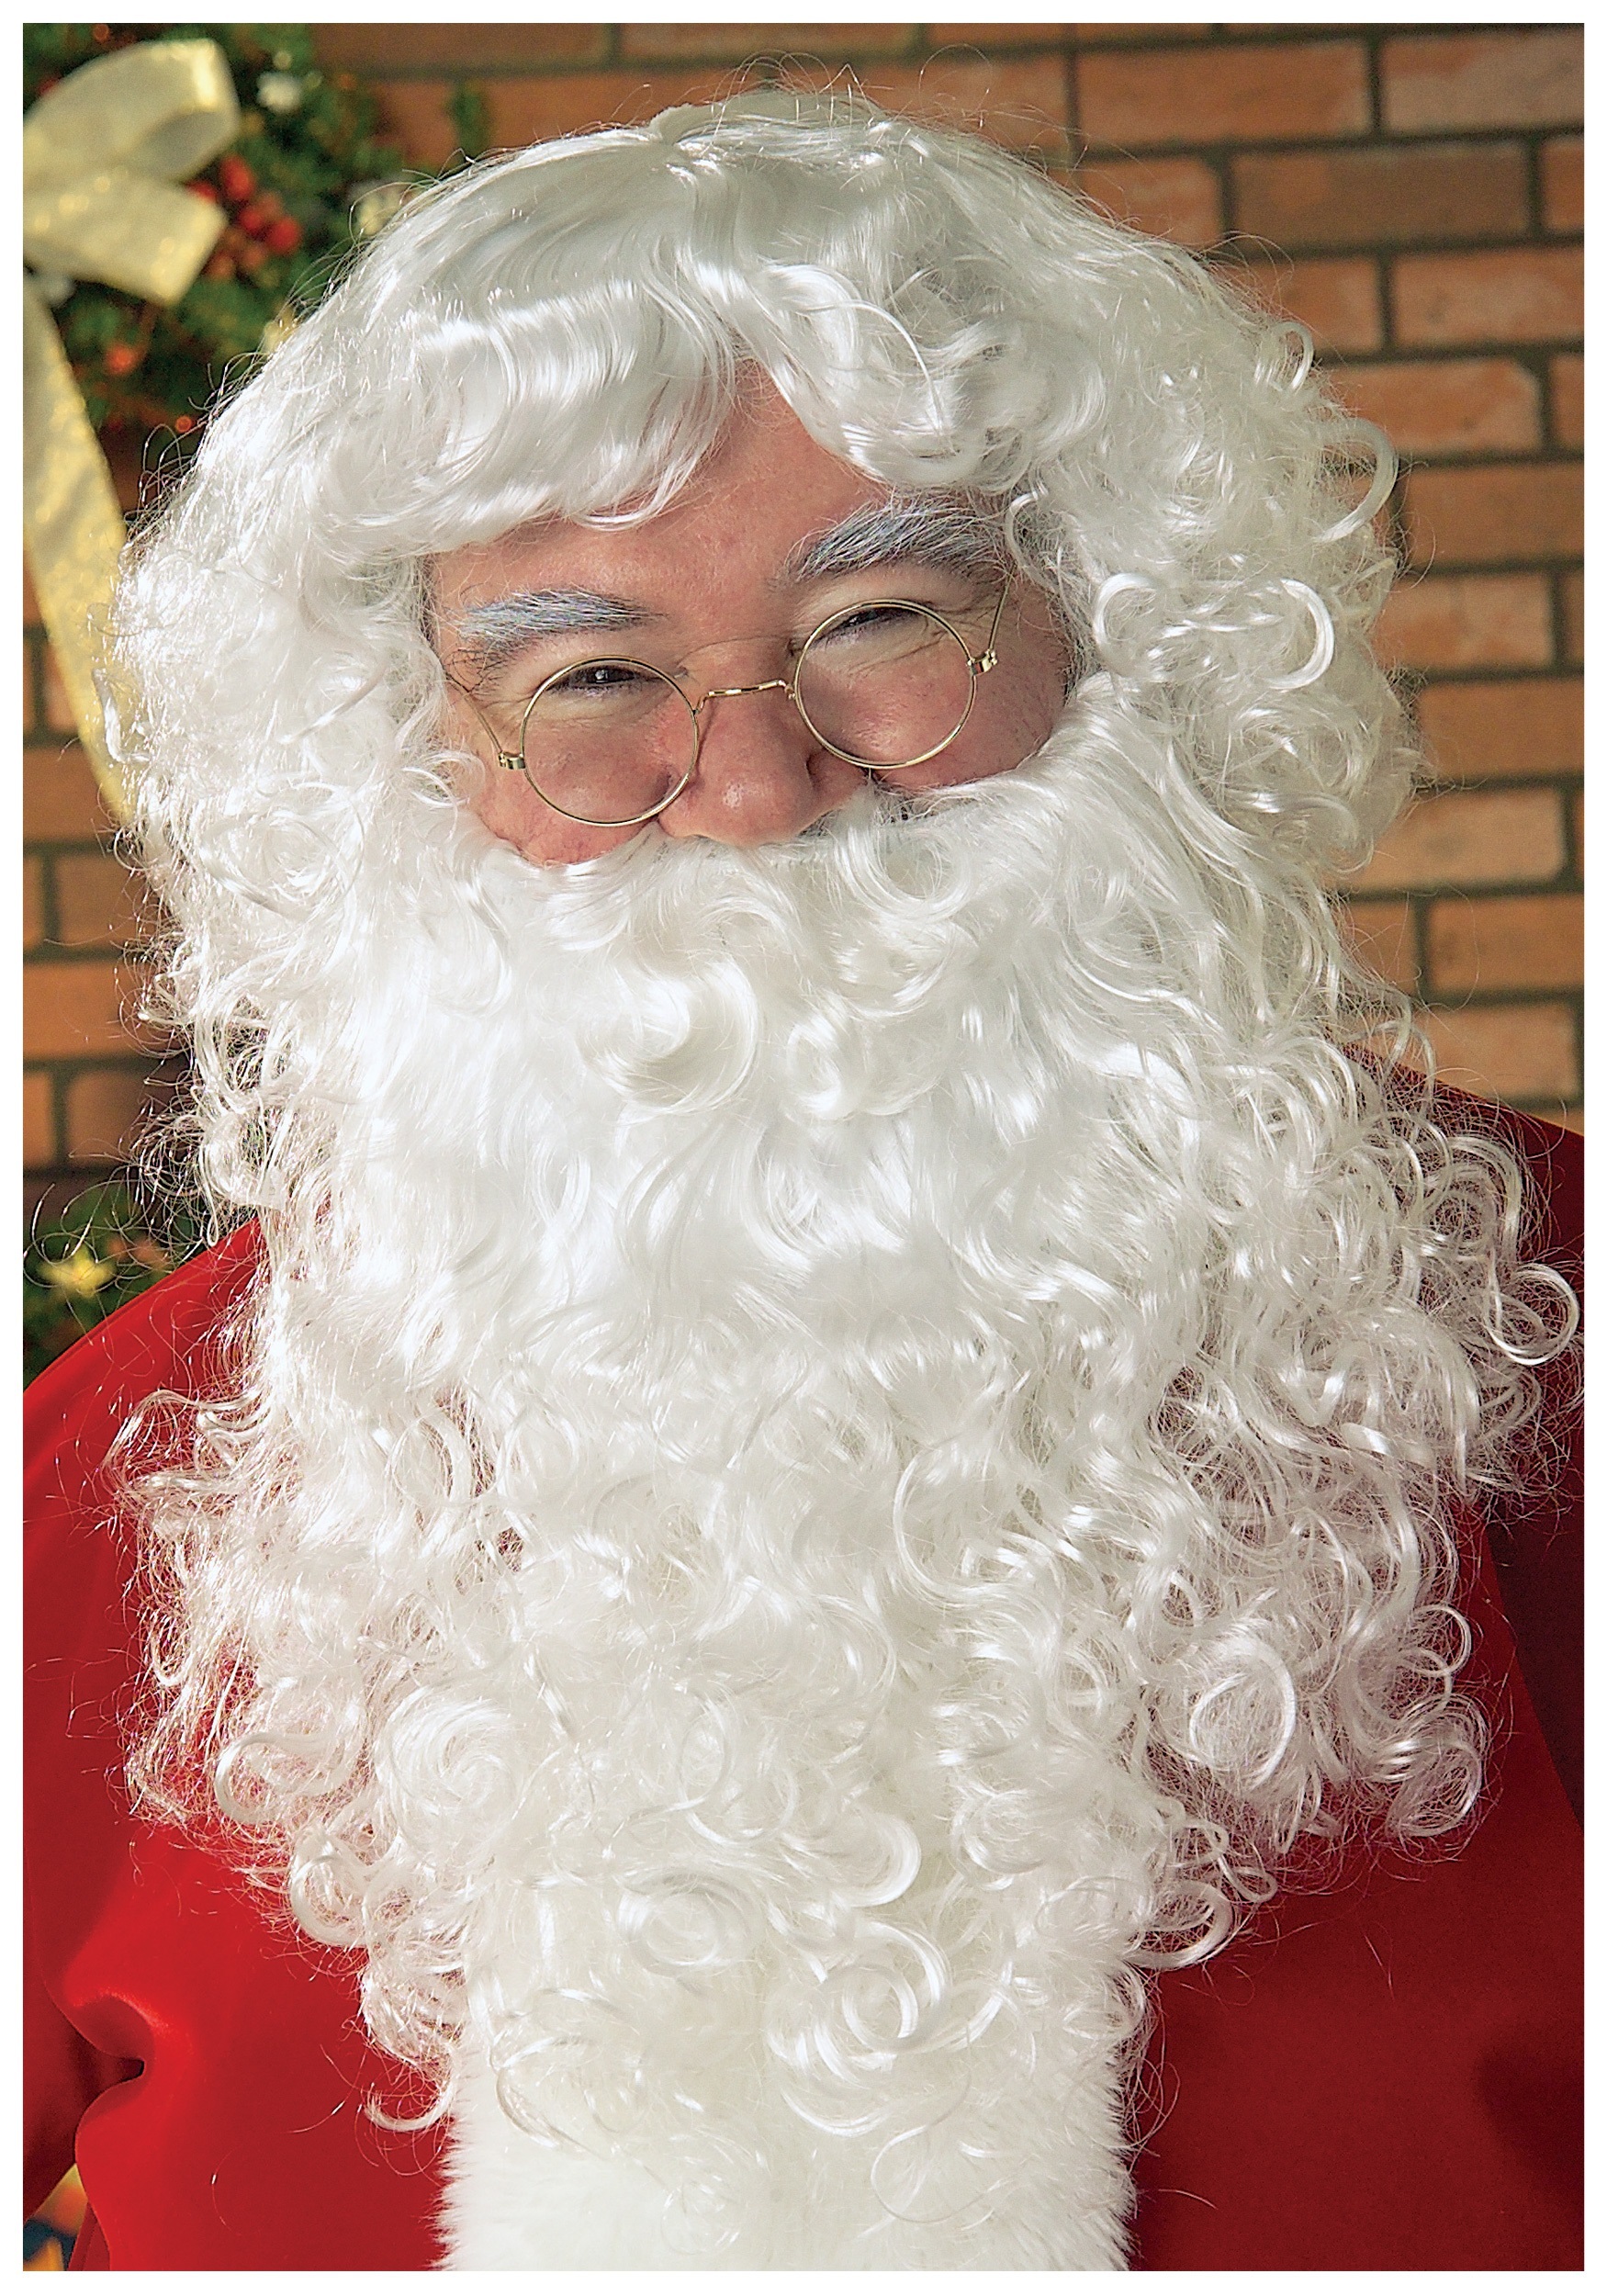 Santa Claus Wig Wallpaper And Image